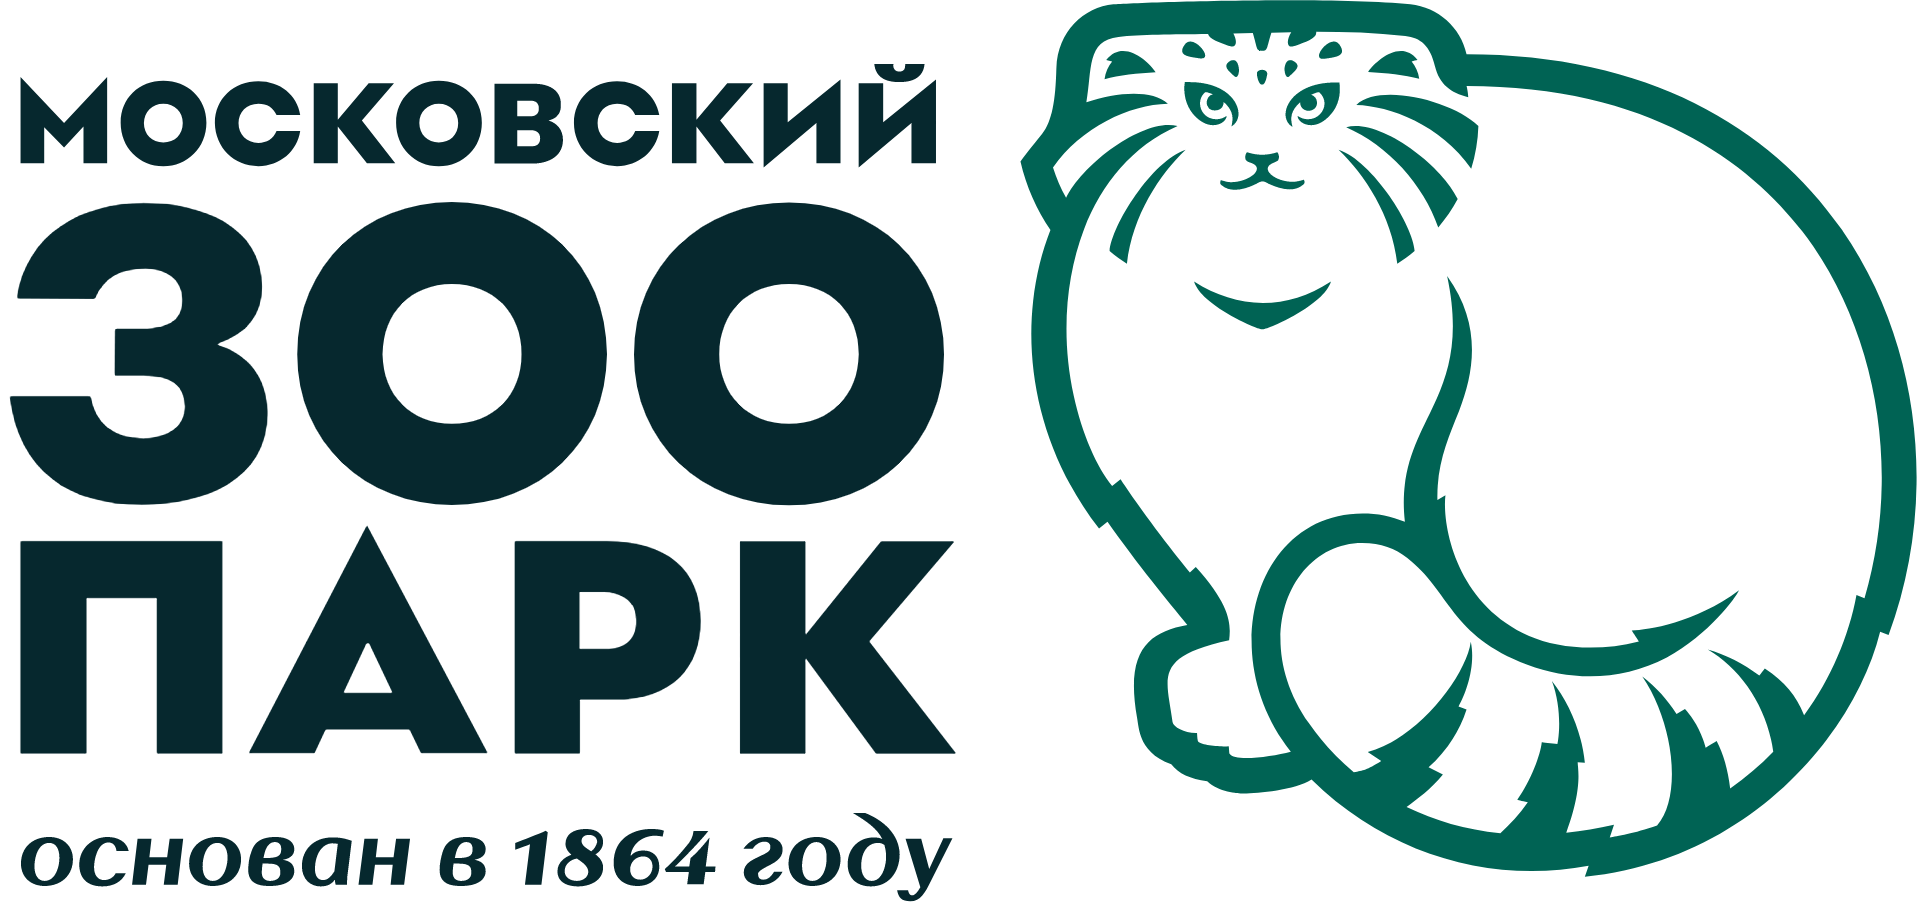 Московский Зоопарк - Московский государственный зоологический парк